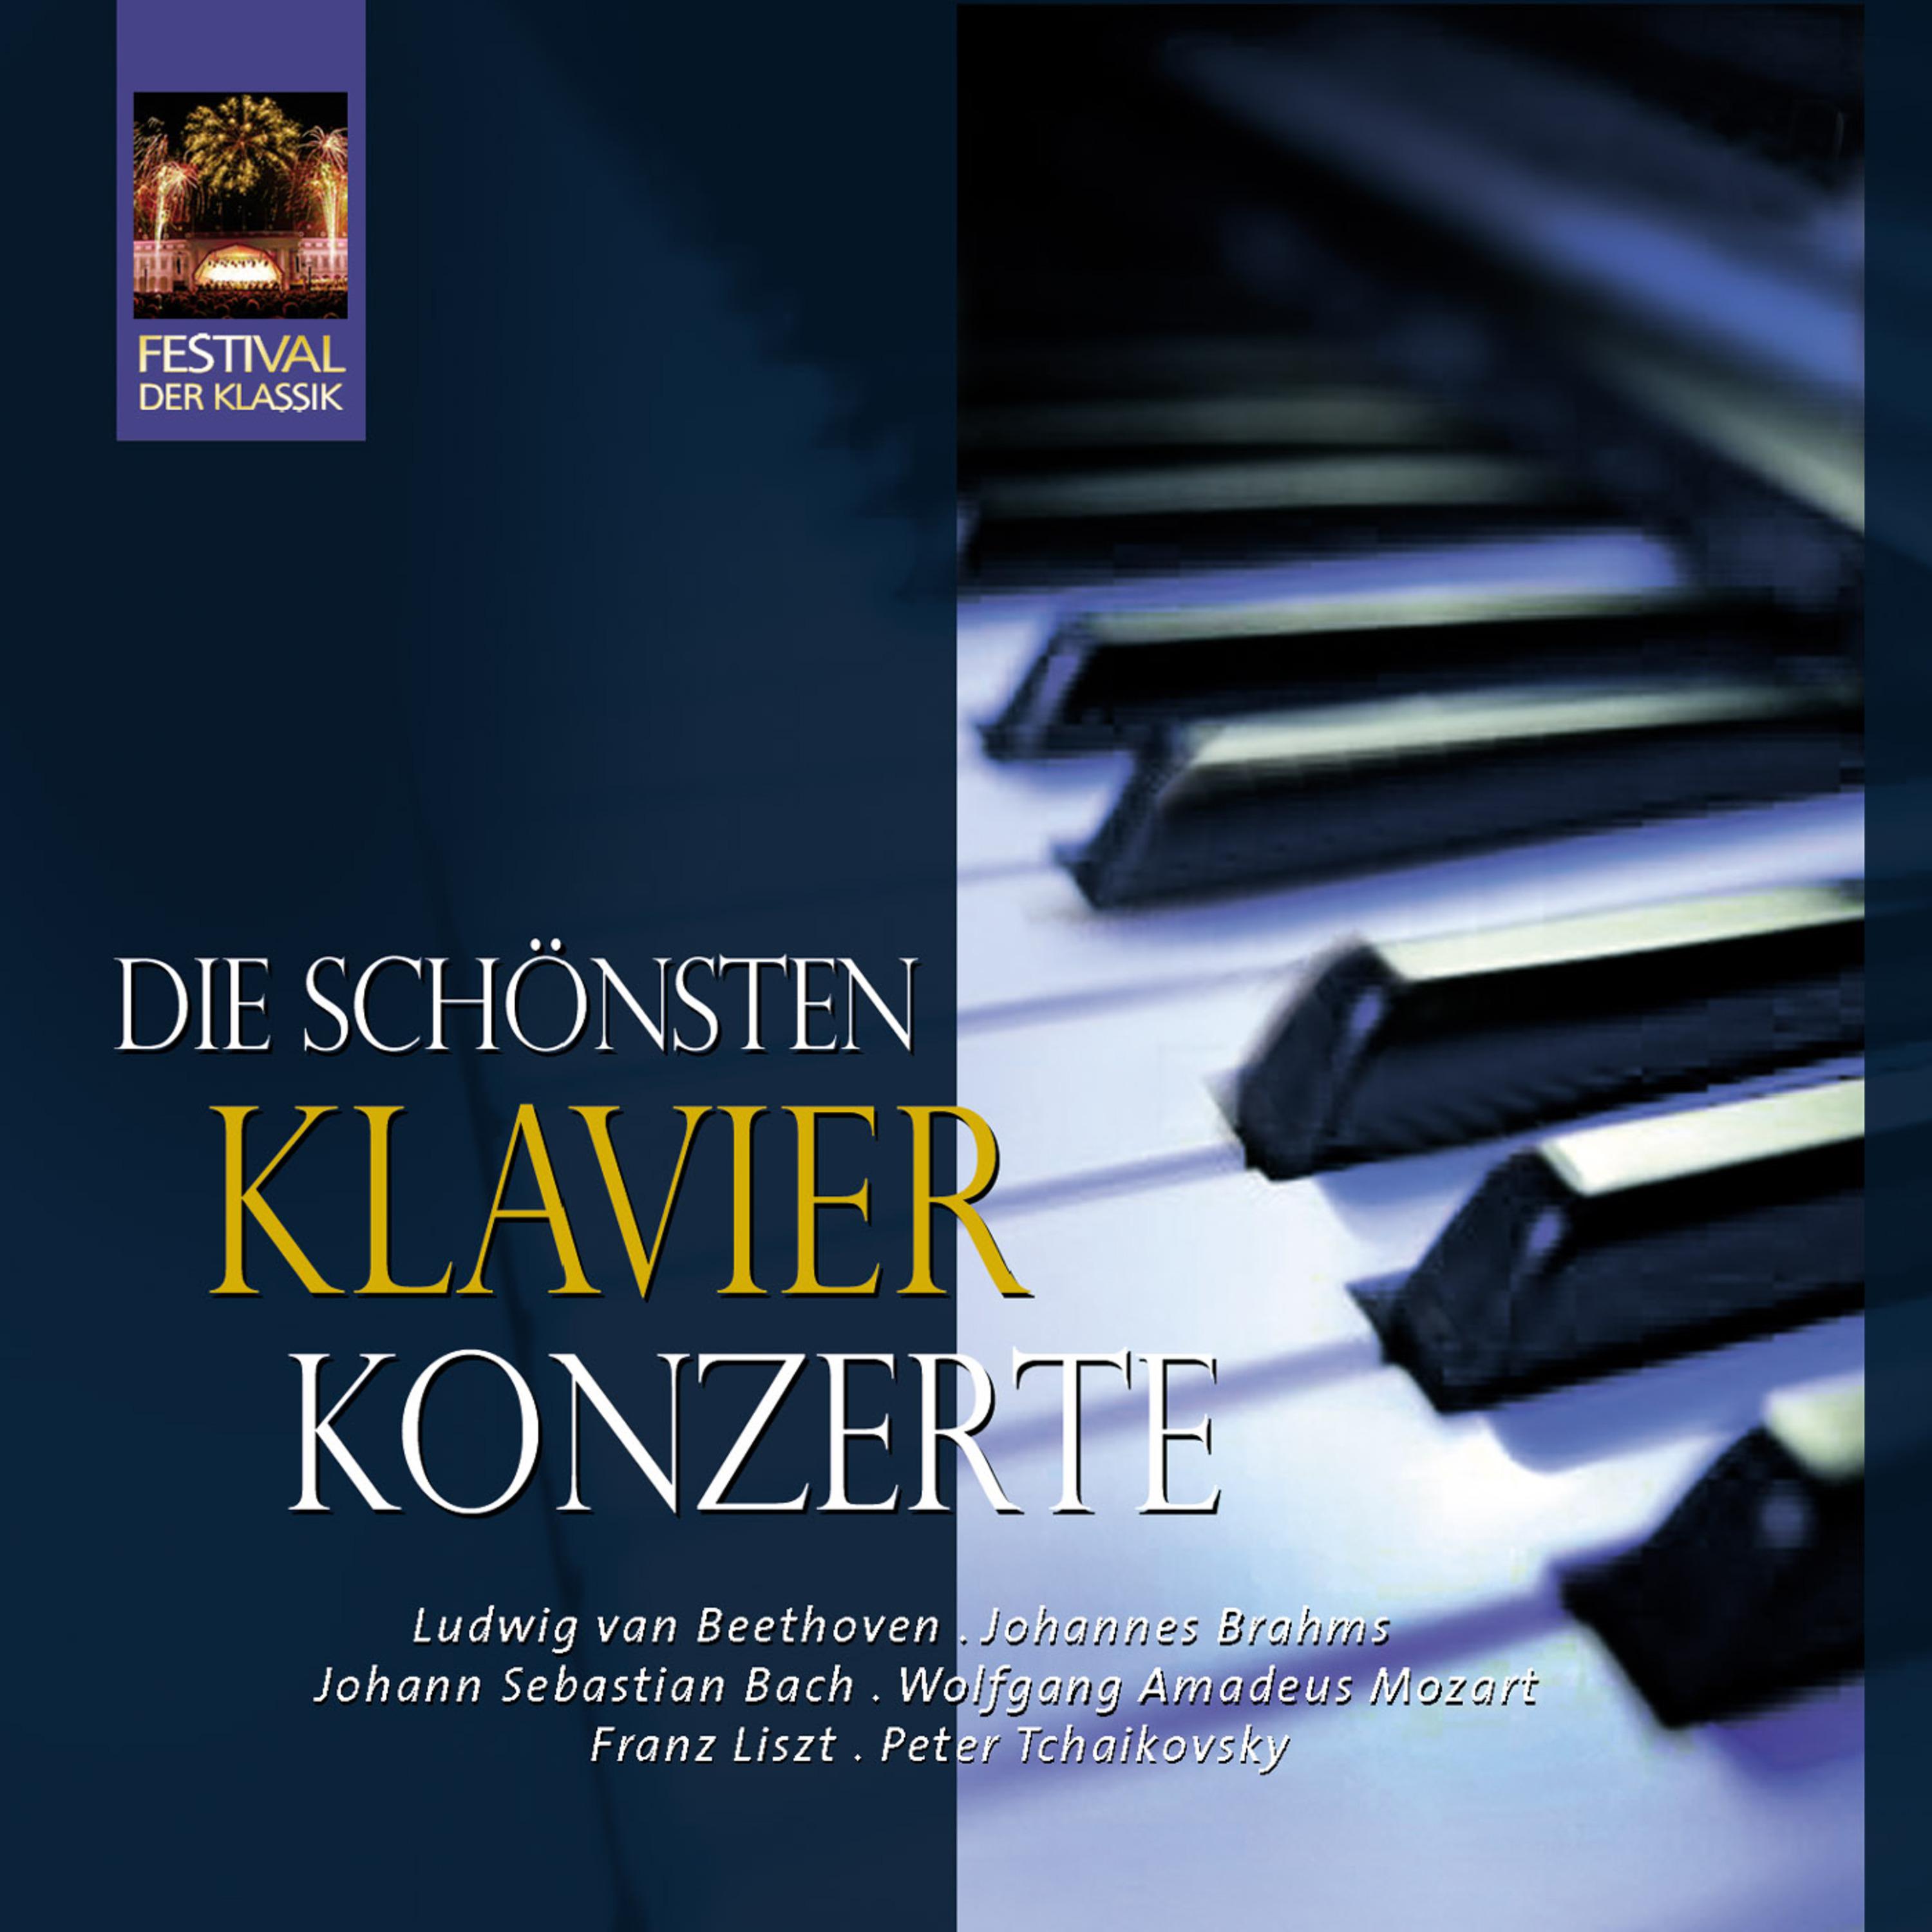 Klavierkonzert No. 5 in E-Flat Major, Op. 73